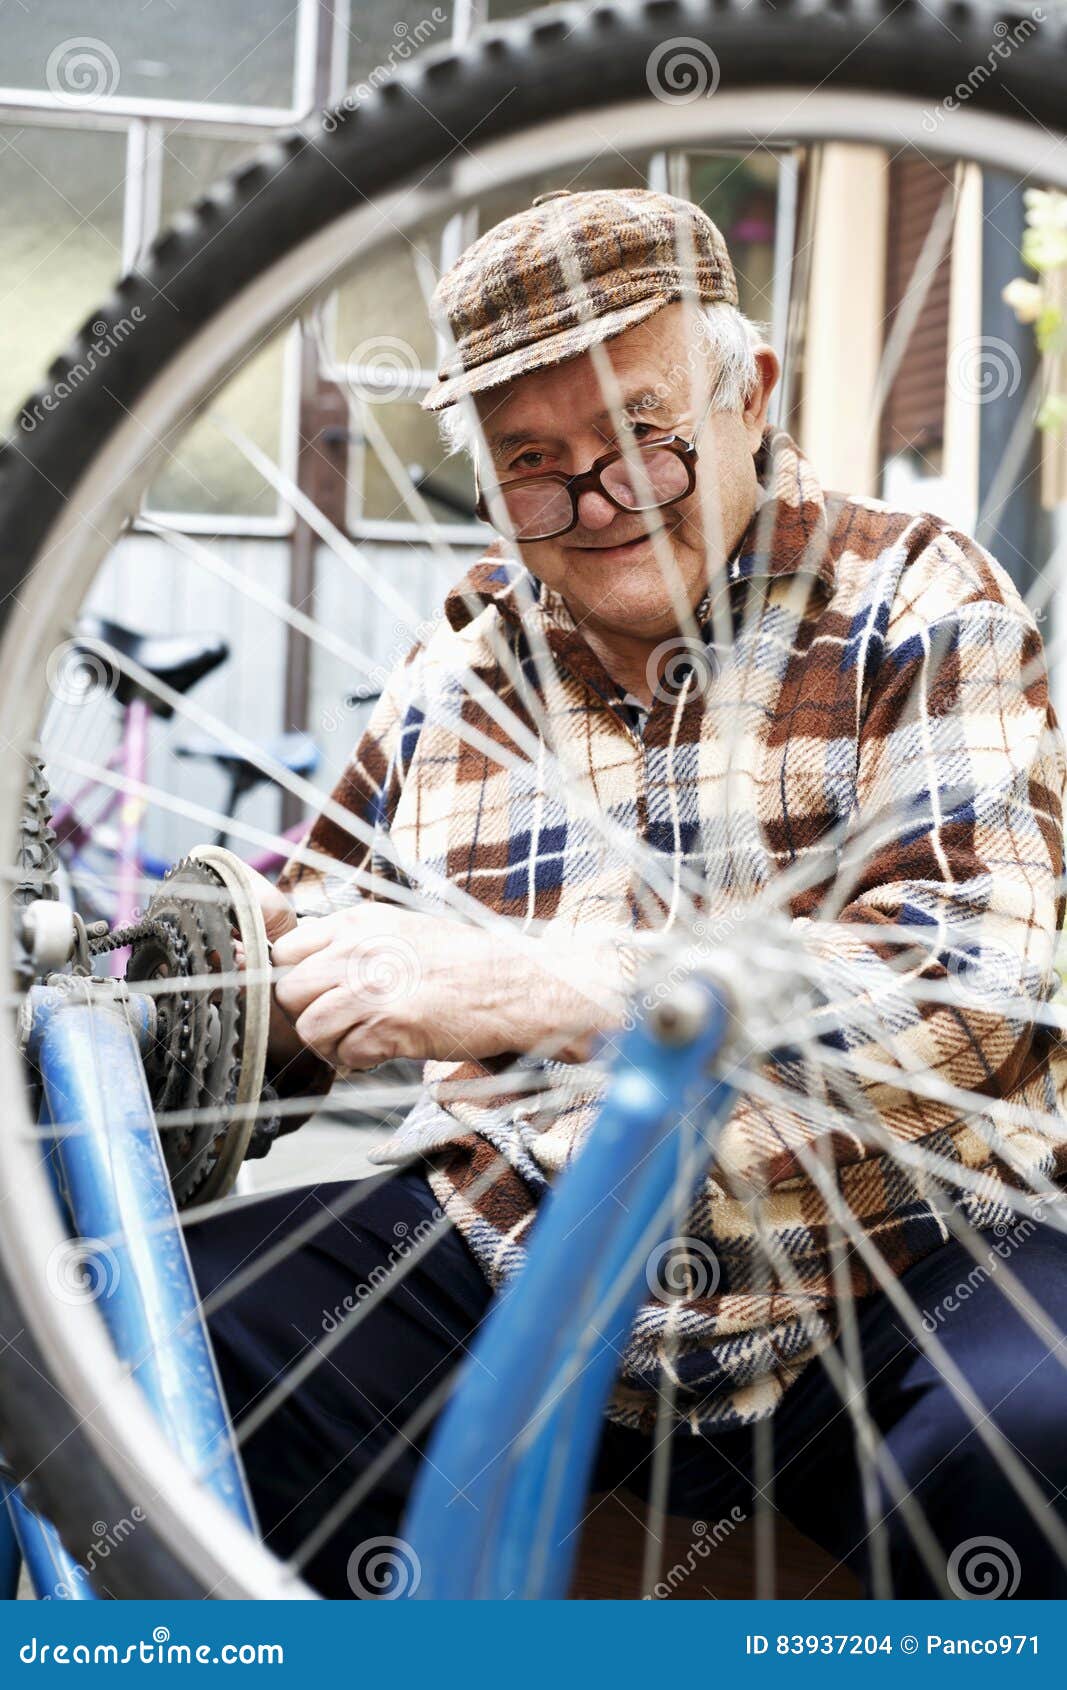 repair of bicycles hobby is an older man